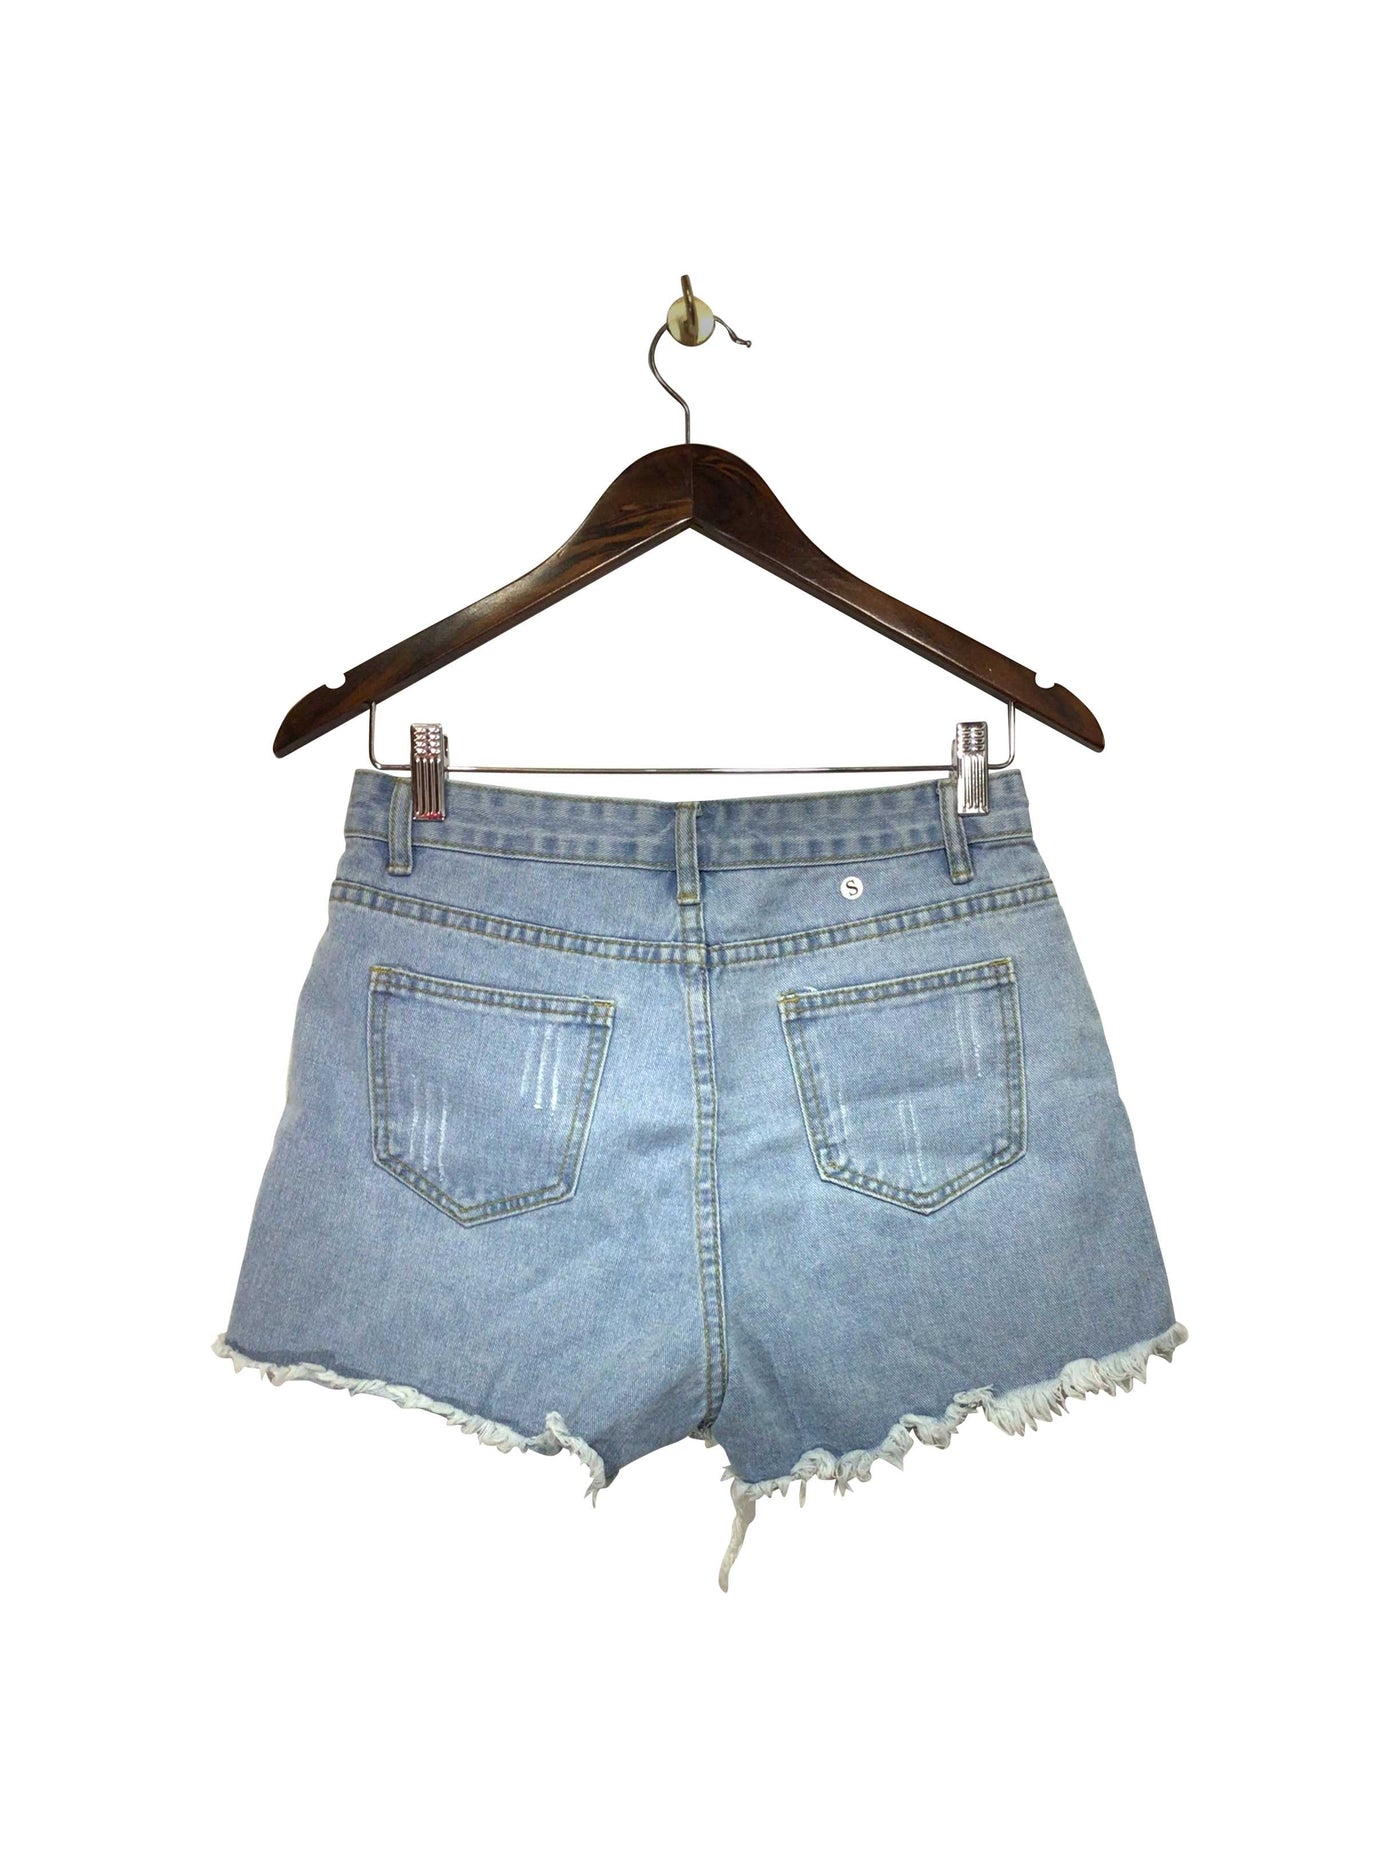 SHEIN Regular fit Jean Shorts in Blue  -  S  13.20 Koop